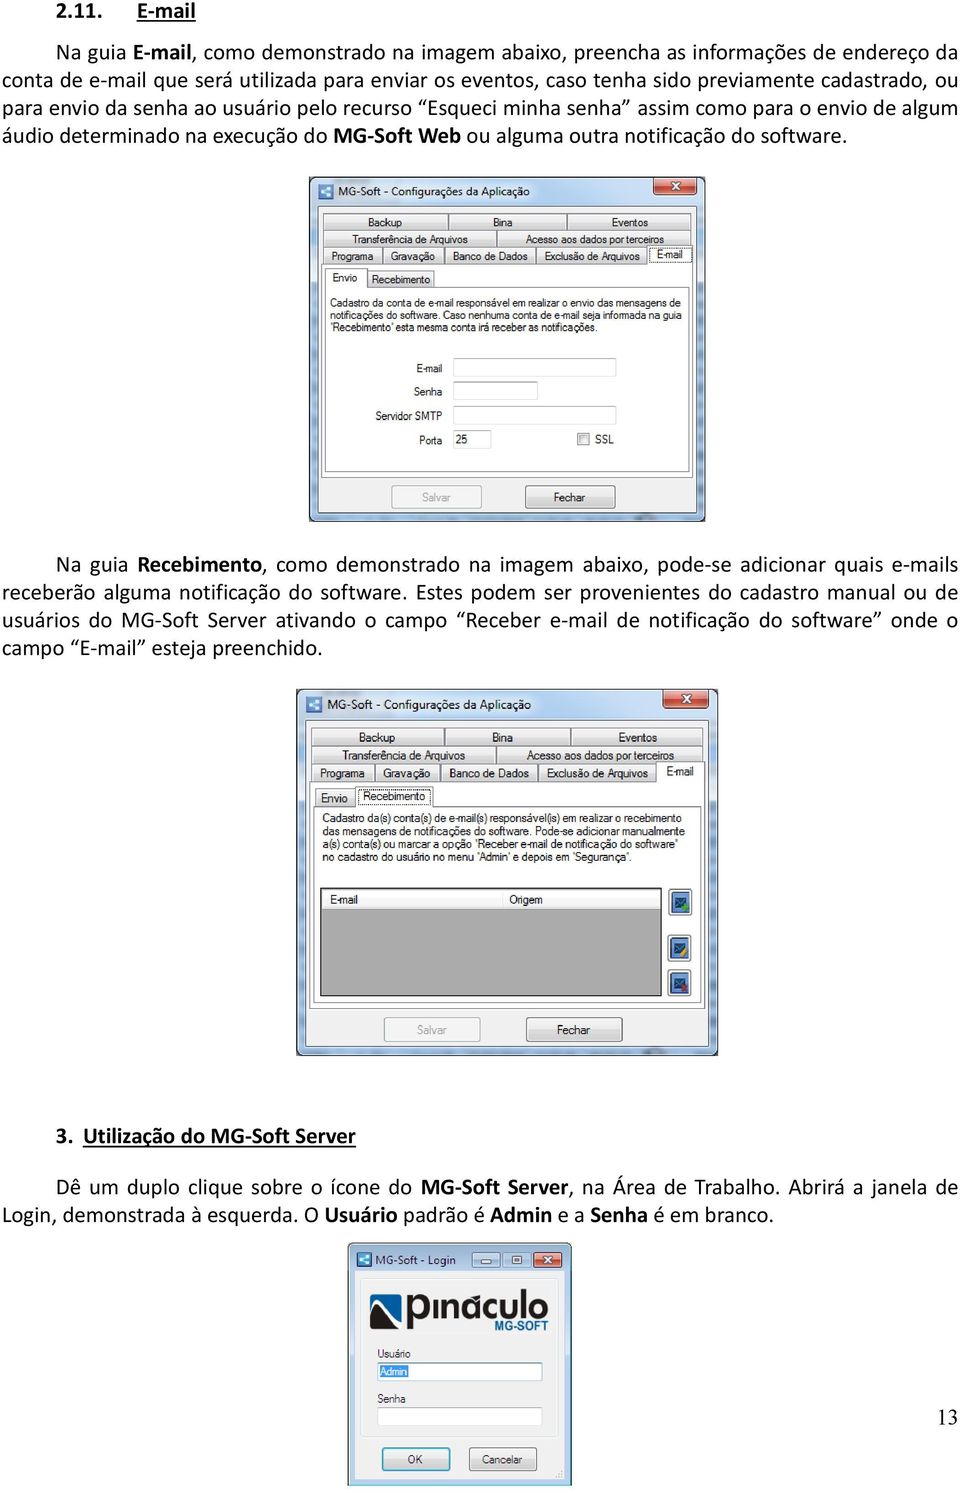 Na guia Recebimento, como demonstrado na imagem abaixo, pode-se adicionar quais e-mails receberão alguma notificação do software.